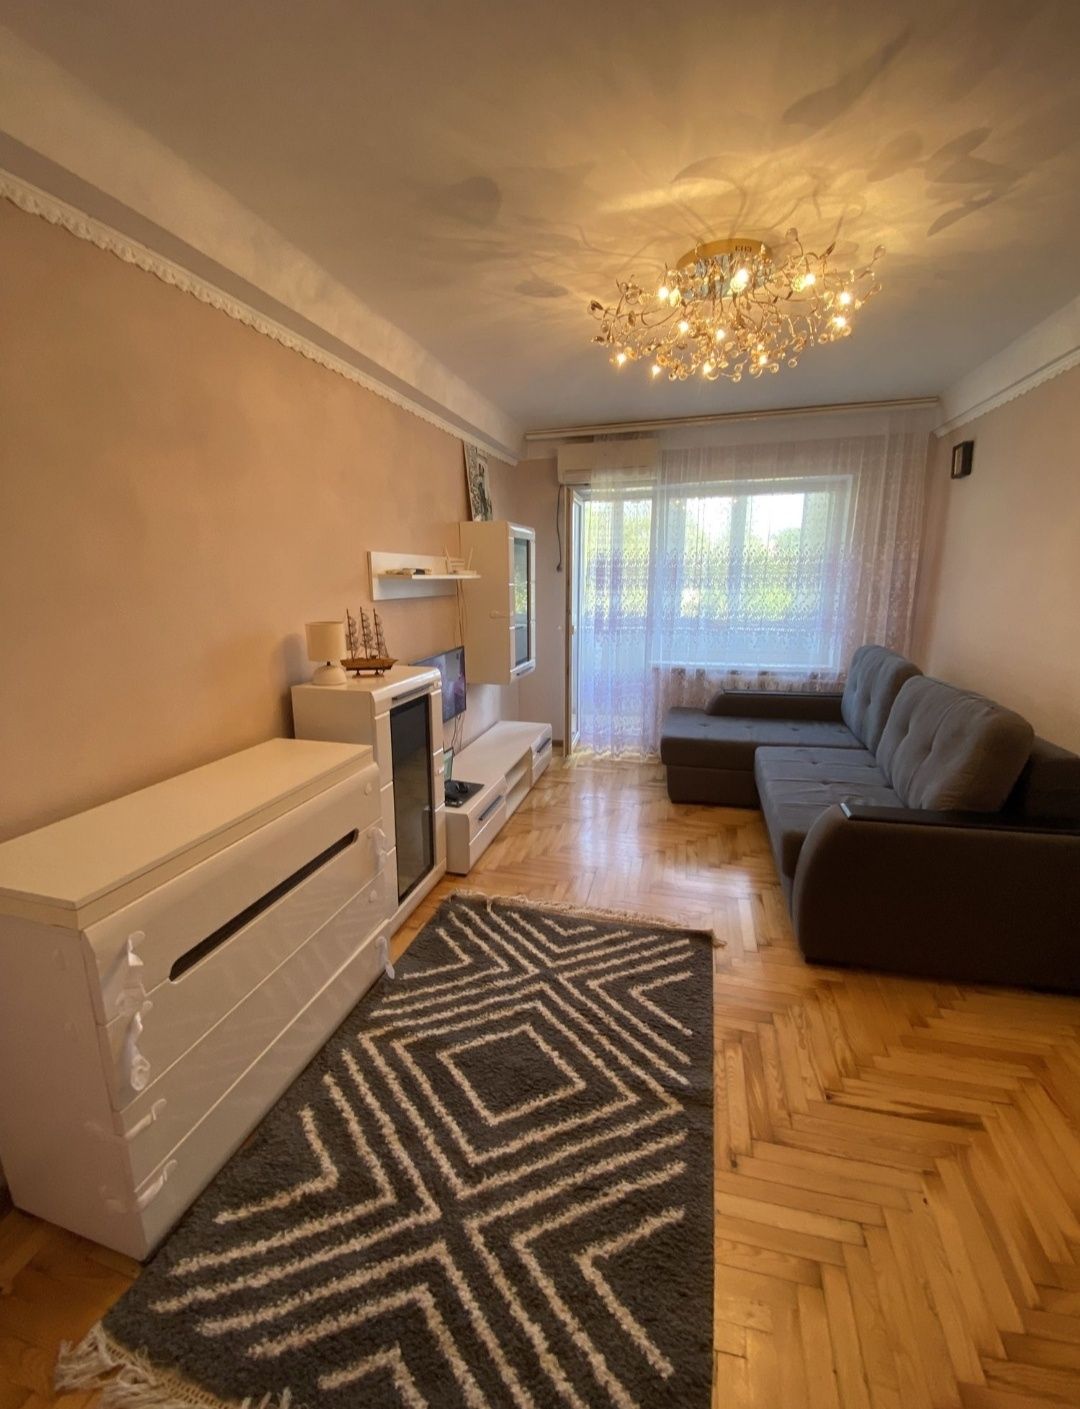 Оренда 2х кімнатної квартири у Шевченківському р-ні (Бочарова 14а)